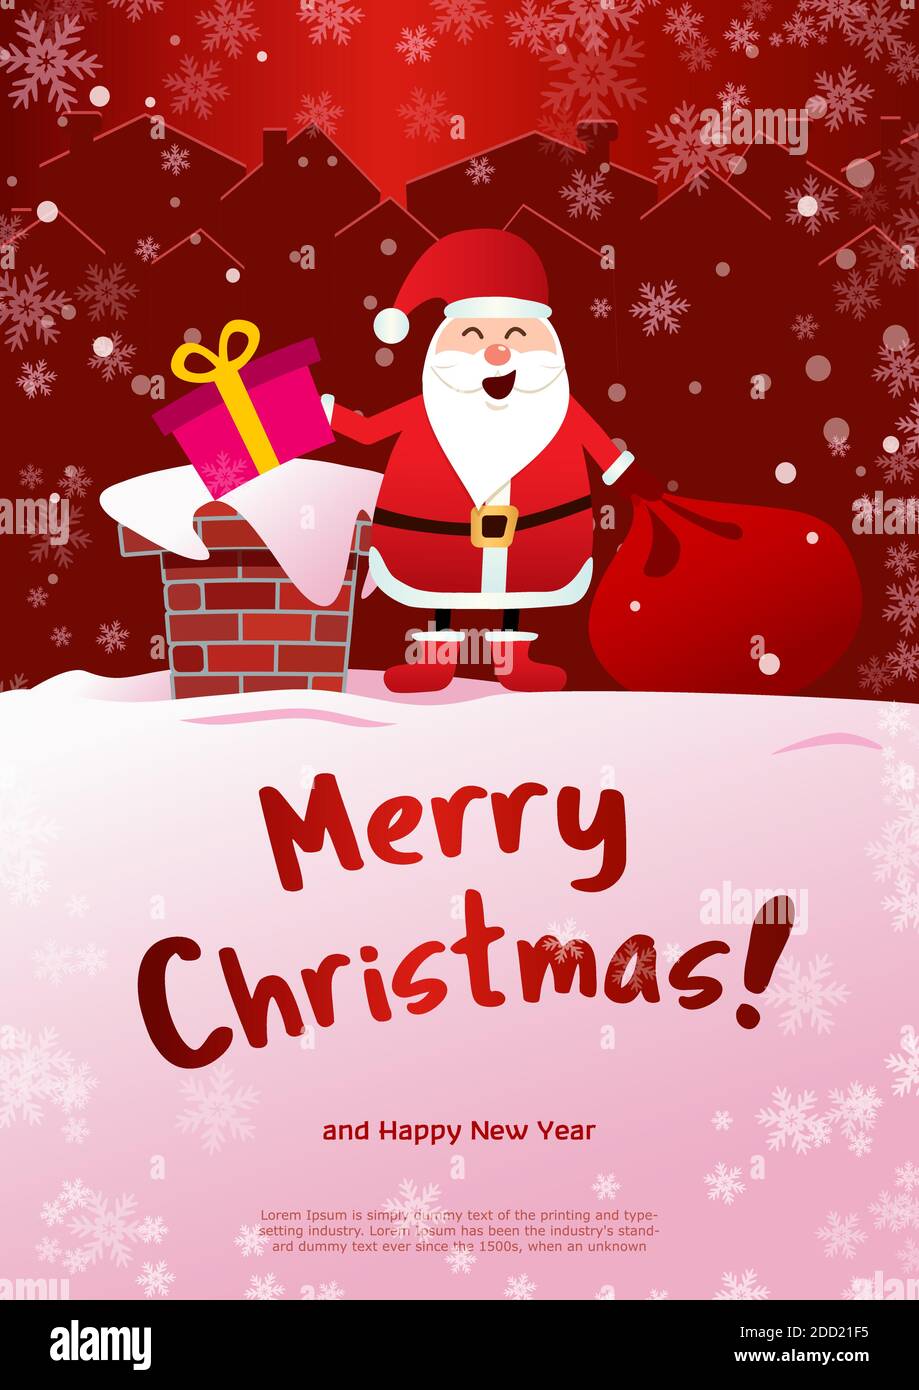 Poster Joyeux Noël. Le Père Noël sur le toit avec un sac de cadeaux, jette un cadeau dans la cheminée. Fond rouge hiver et flocons de neige blancs. Illustration de Vecteur